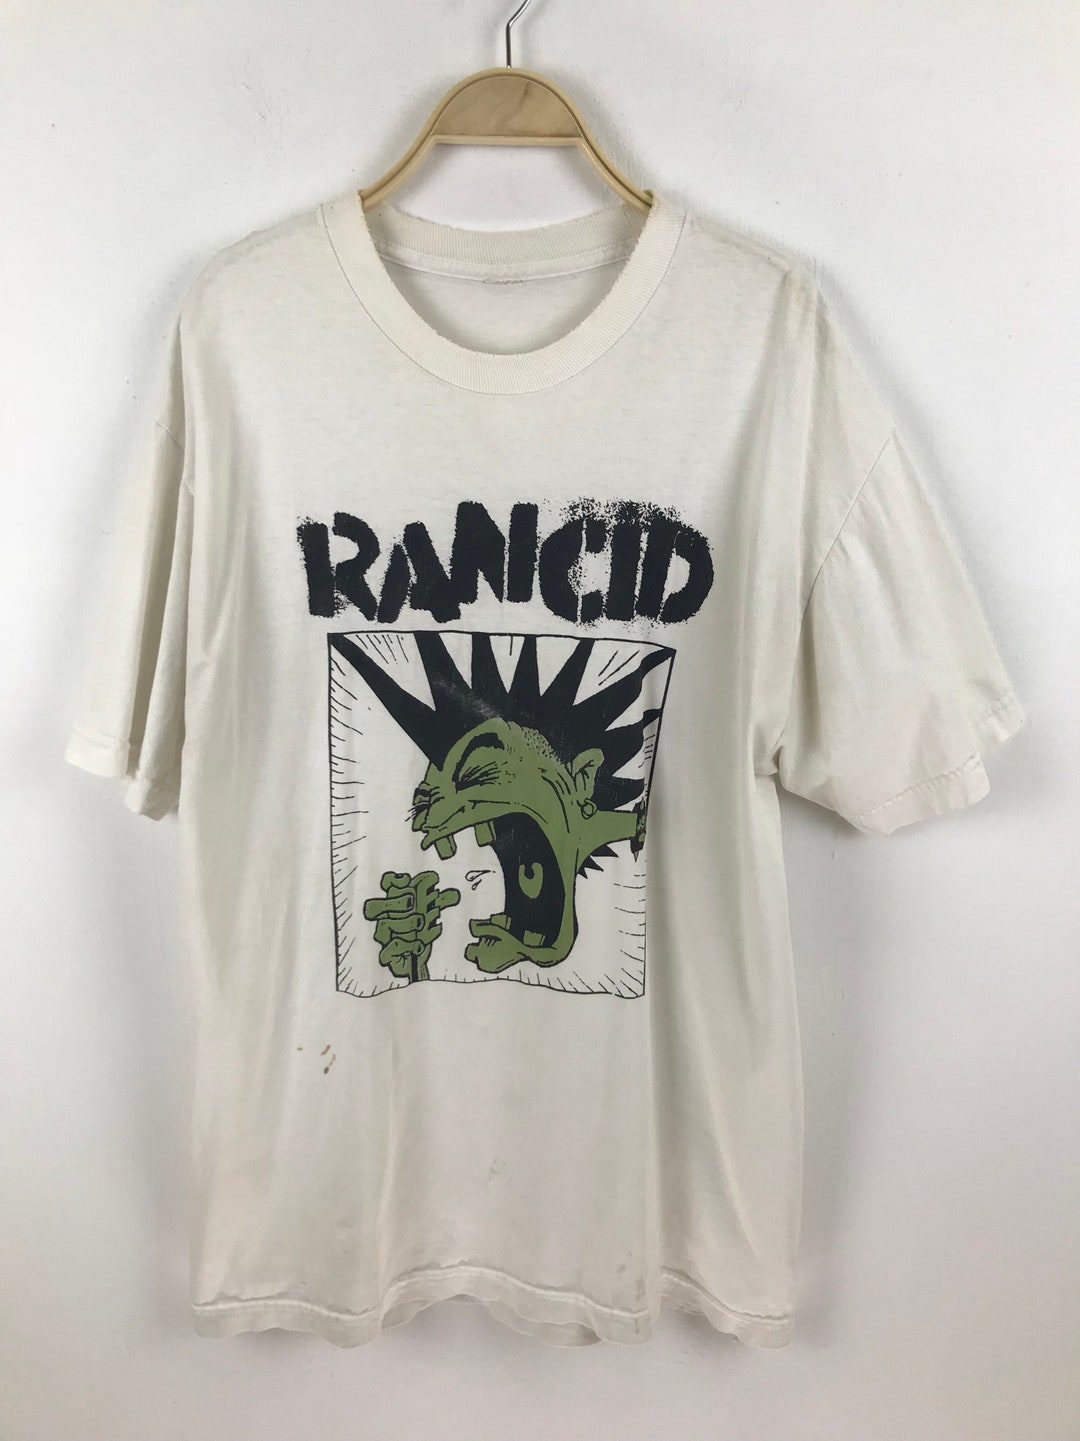 Rancid Punk Rock/ska Punk Band Shirt - Etsy